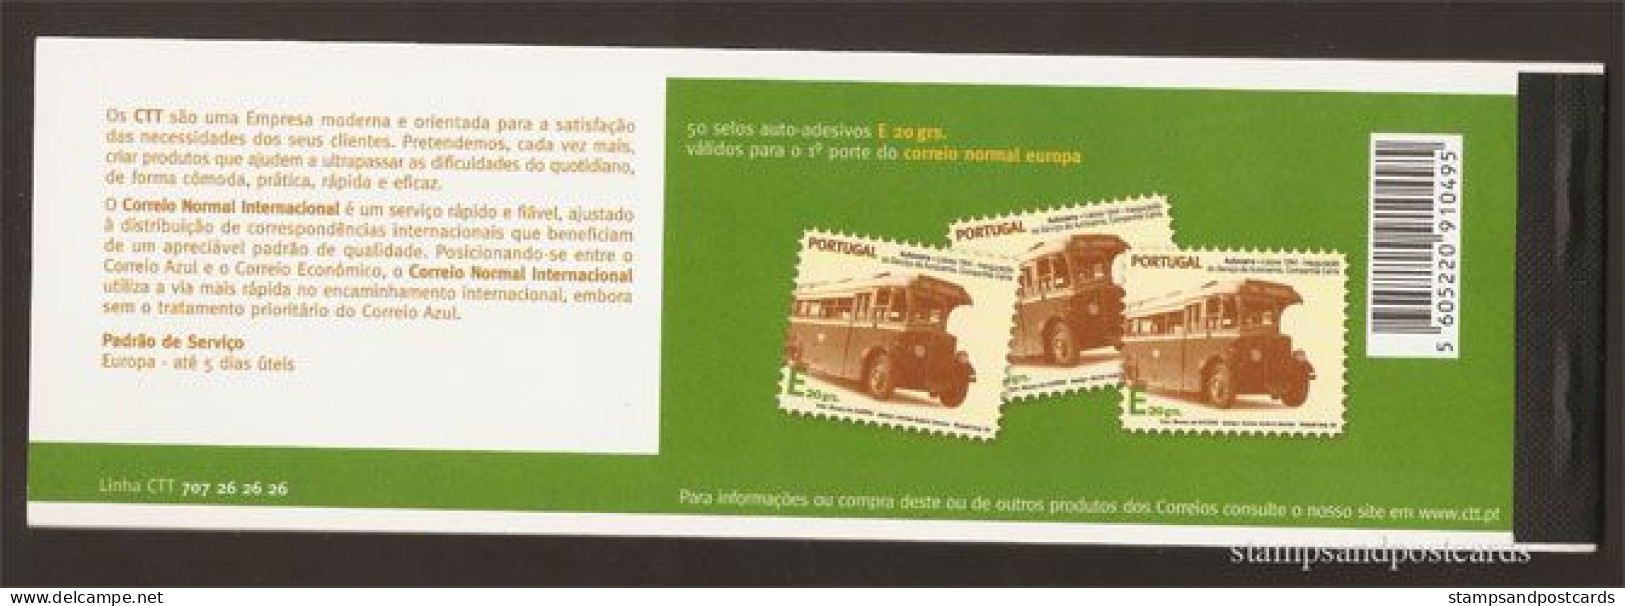 Portugal Transports Carnet Autocollant 2008 Debut Service Autocar Carris Lisboa 1944 Sticker Stamp Booklet Bus Lisbon*** - Bus